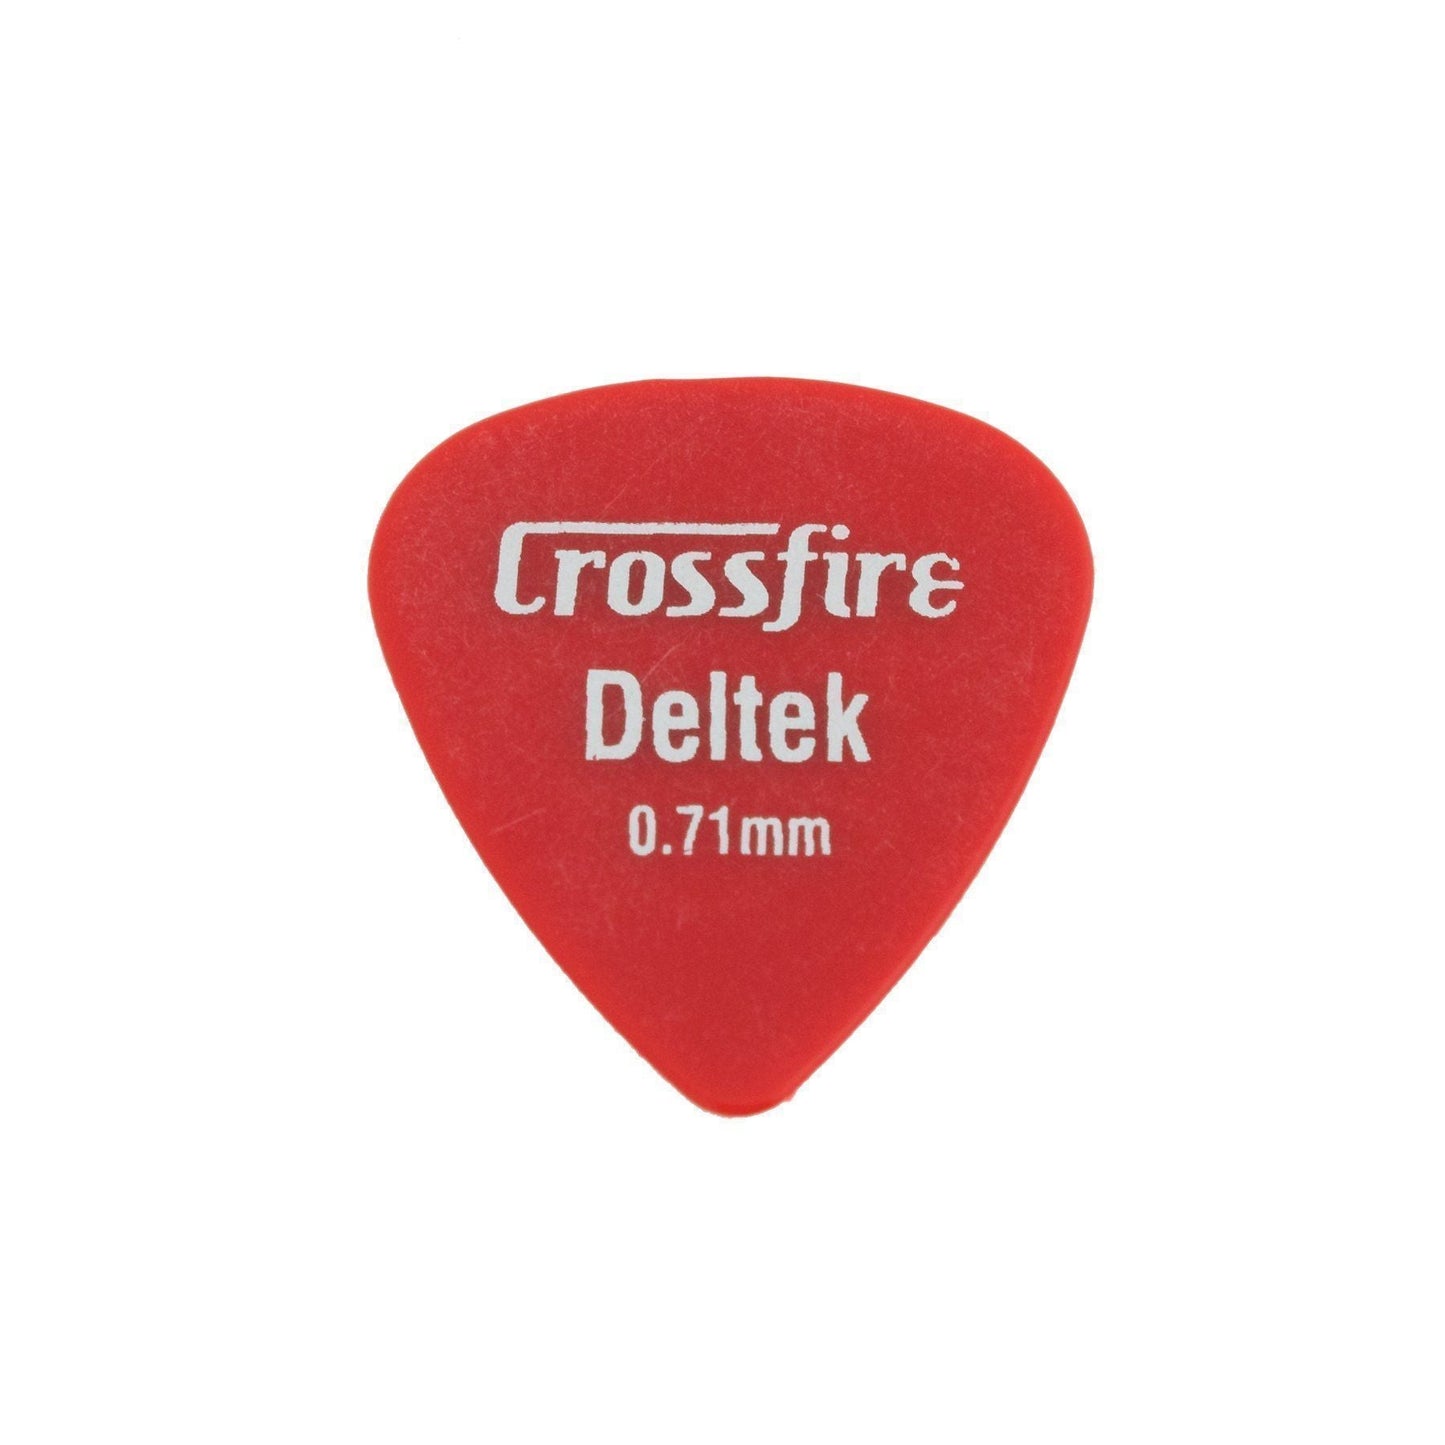 Crossfire Deltek 0.71mm Canned Guitar Picks (20 Pack Assorted)